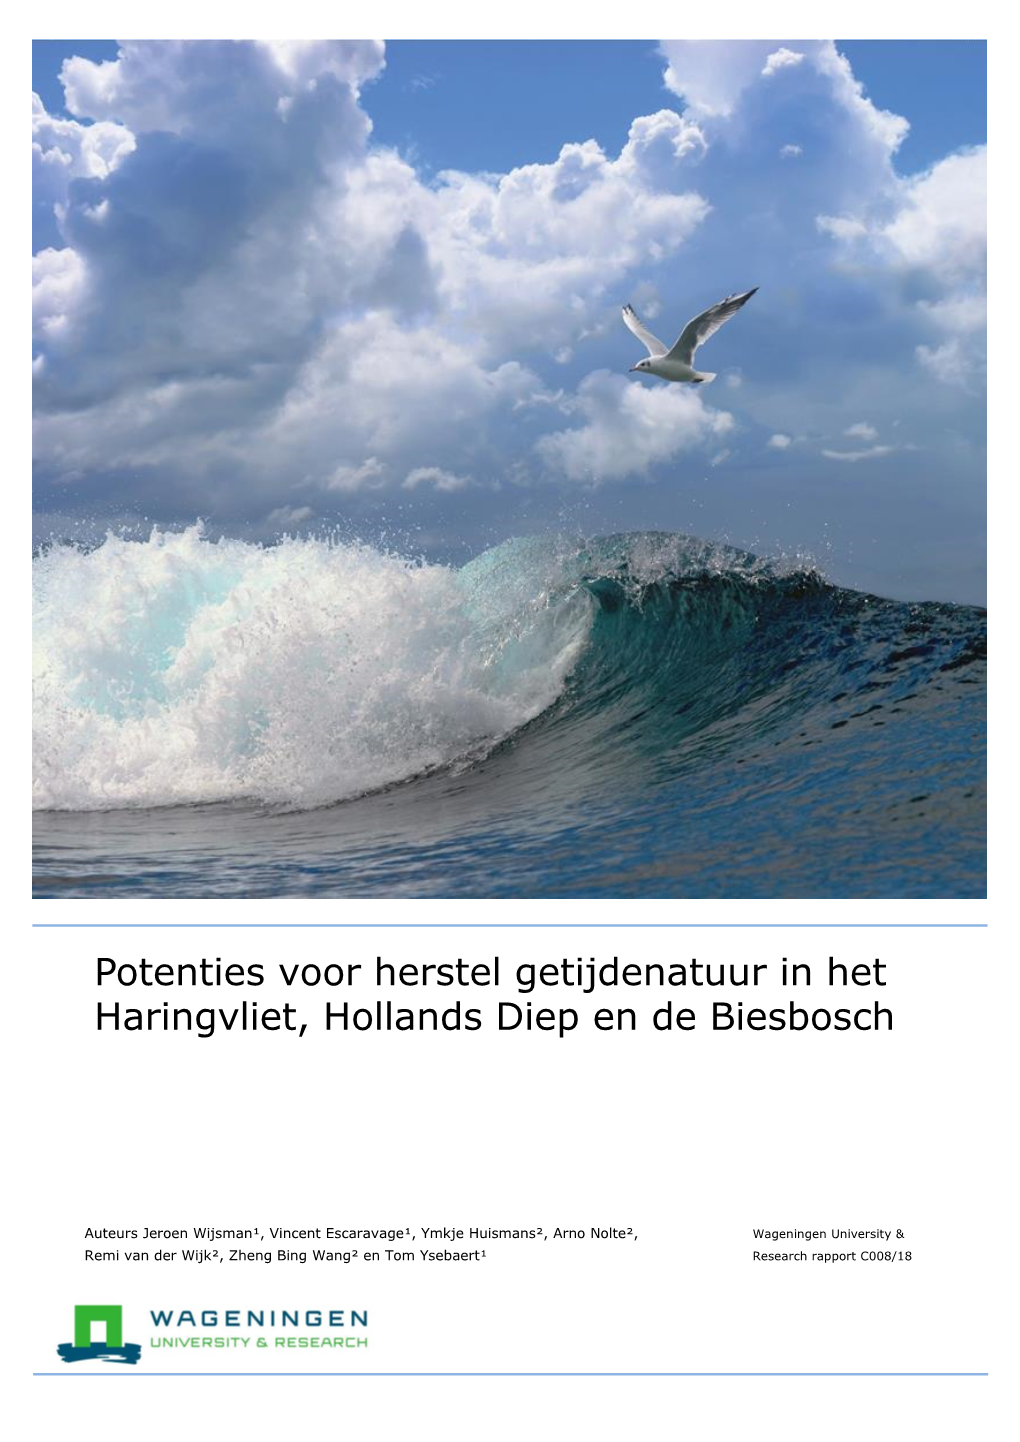 Potenties Voor Herstel Getijdenatuur in Het Haringvliet, Hollands Diep En De Biesbosch